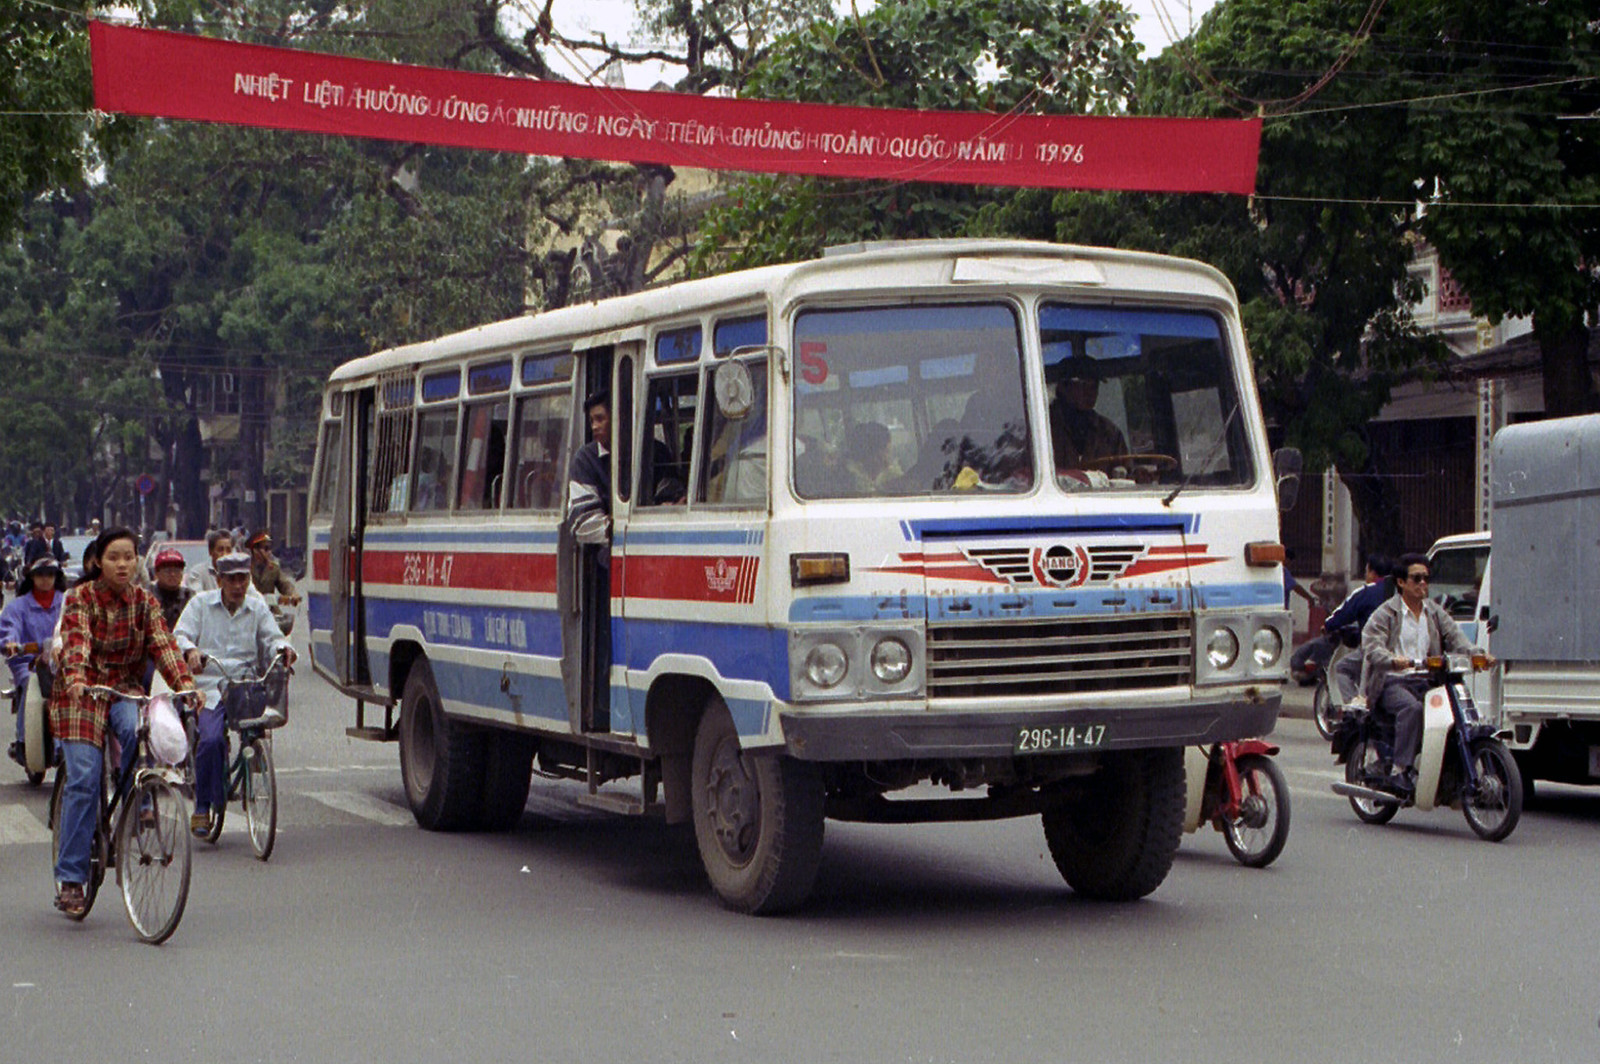 Chùm ảnh: ‘Bộ sưu tập’ xe buýt đủ mọi chủng loại ở Hà Nội năm 1996